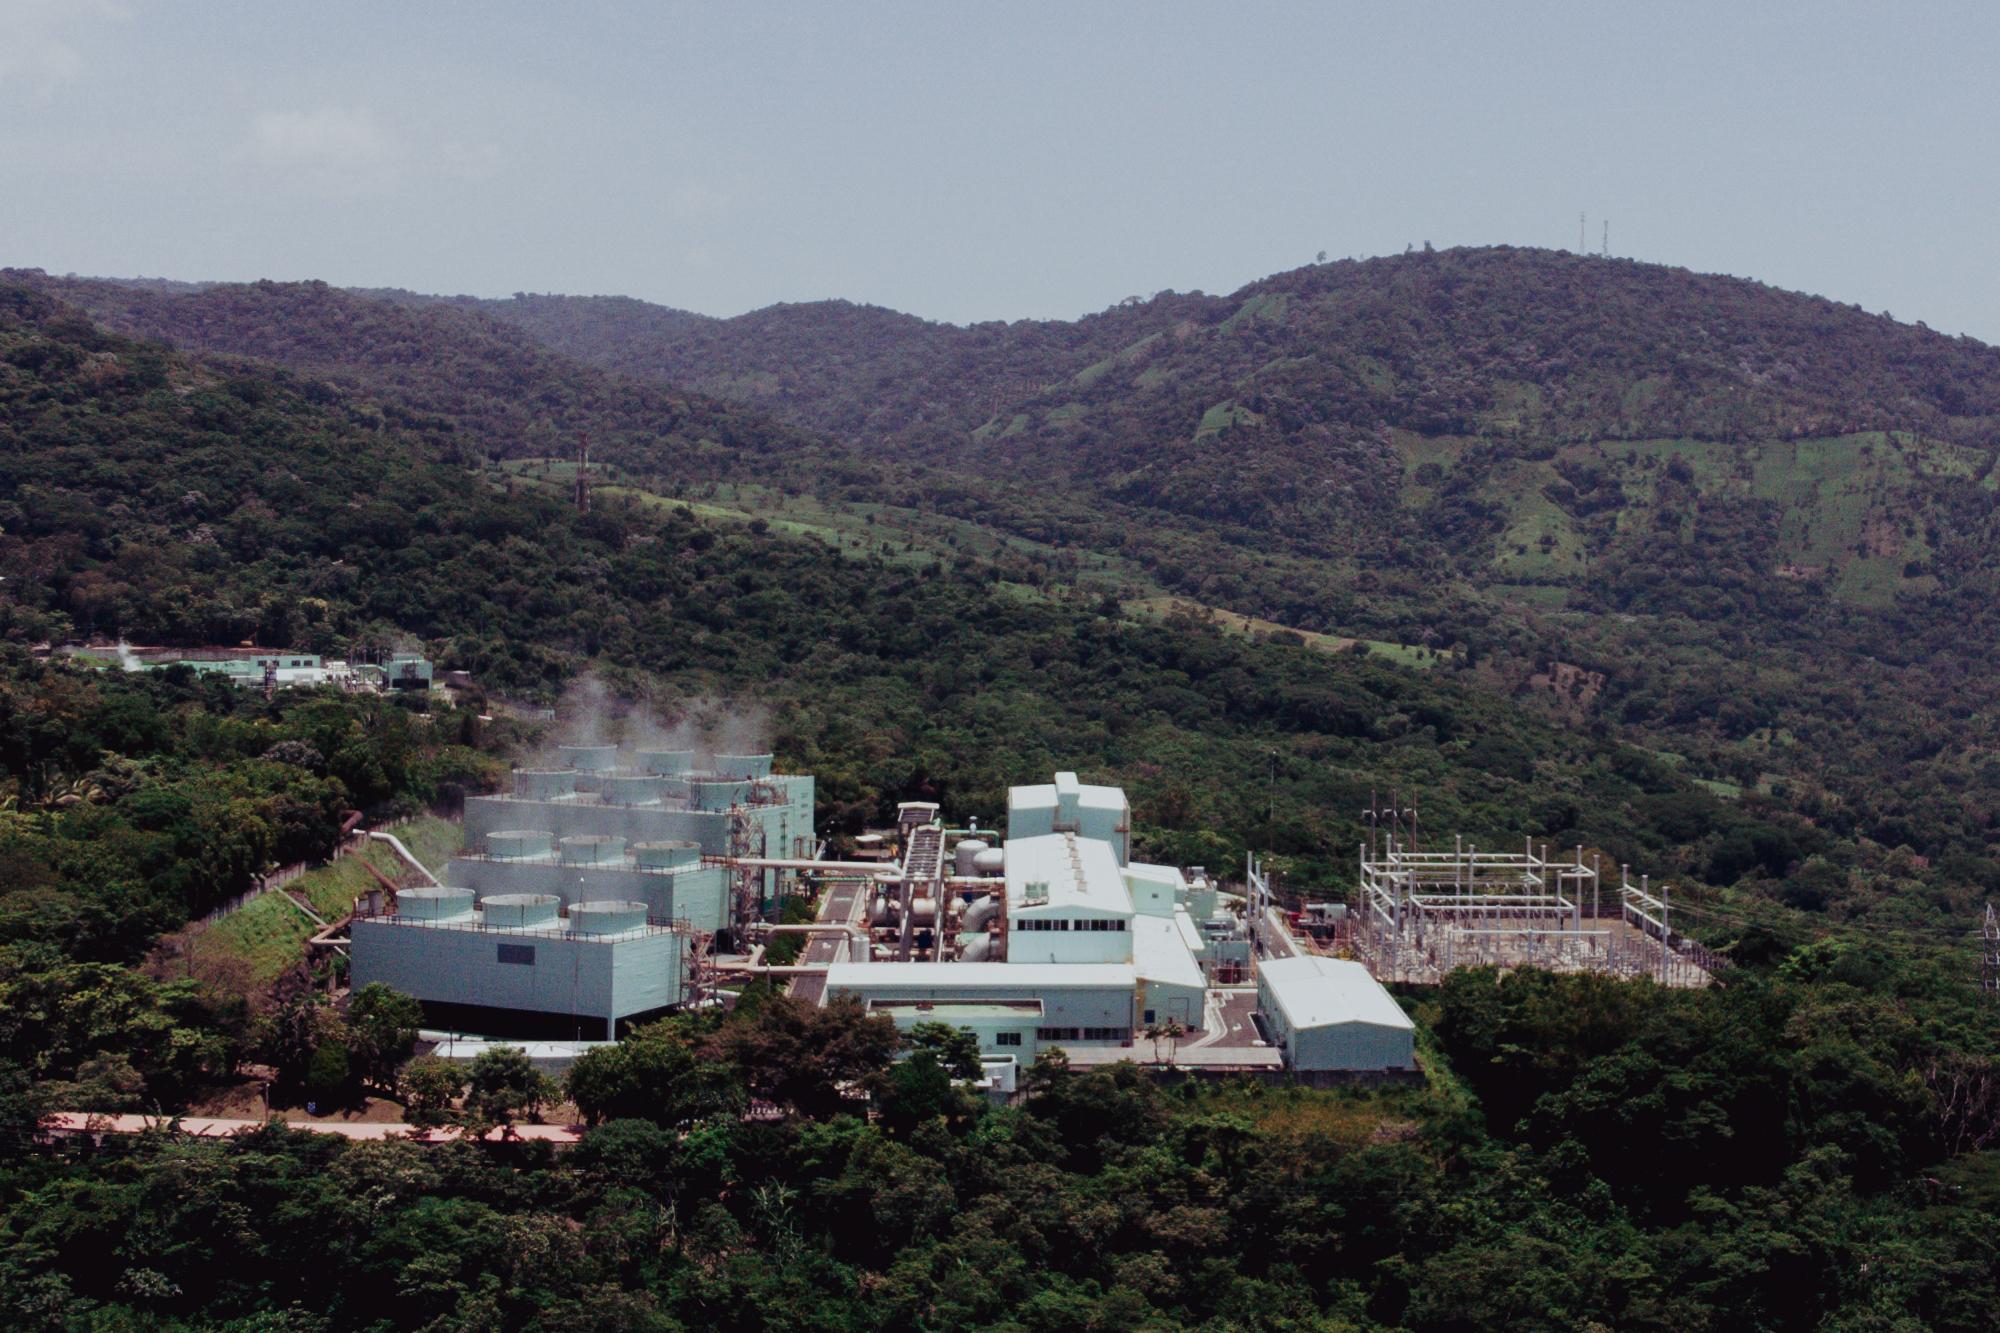 The Berlín Geothermal Plant in Usulután, El Salvador. Photo: Carlos Barrera/El Faro